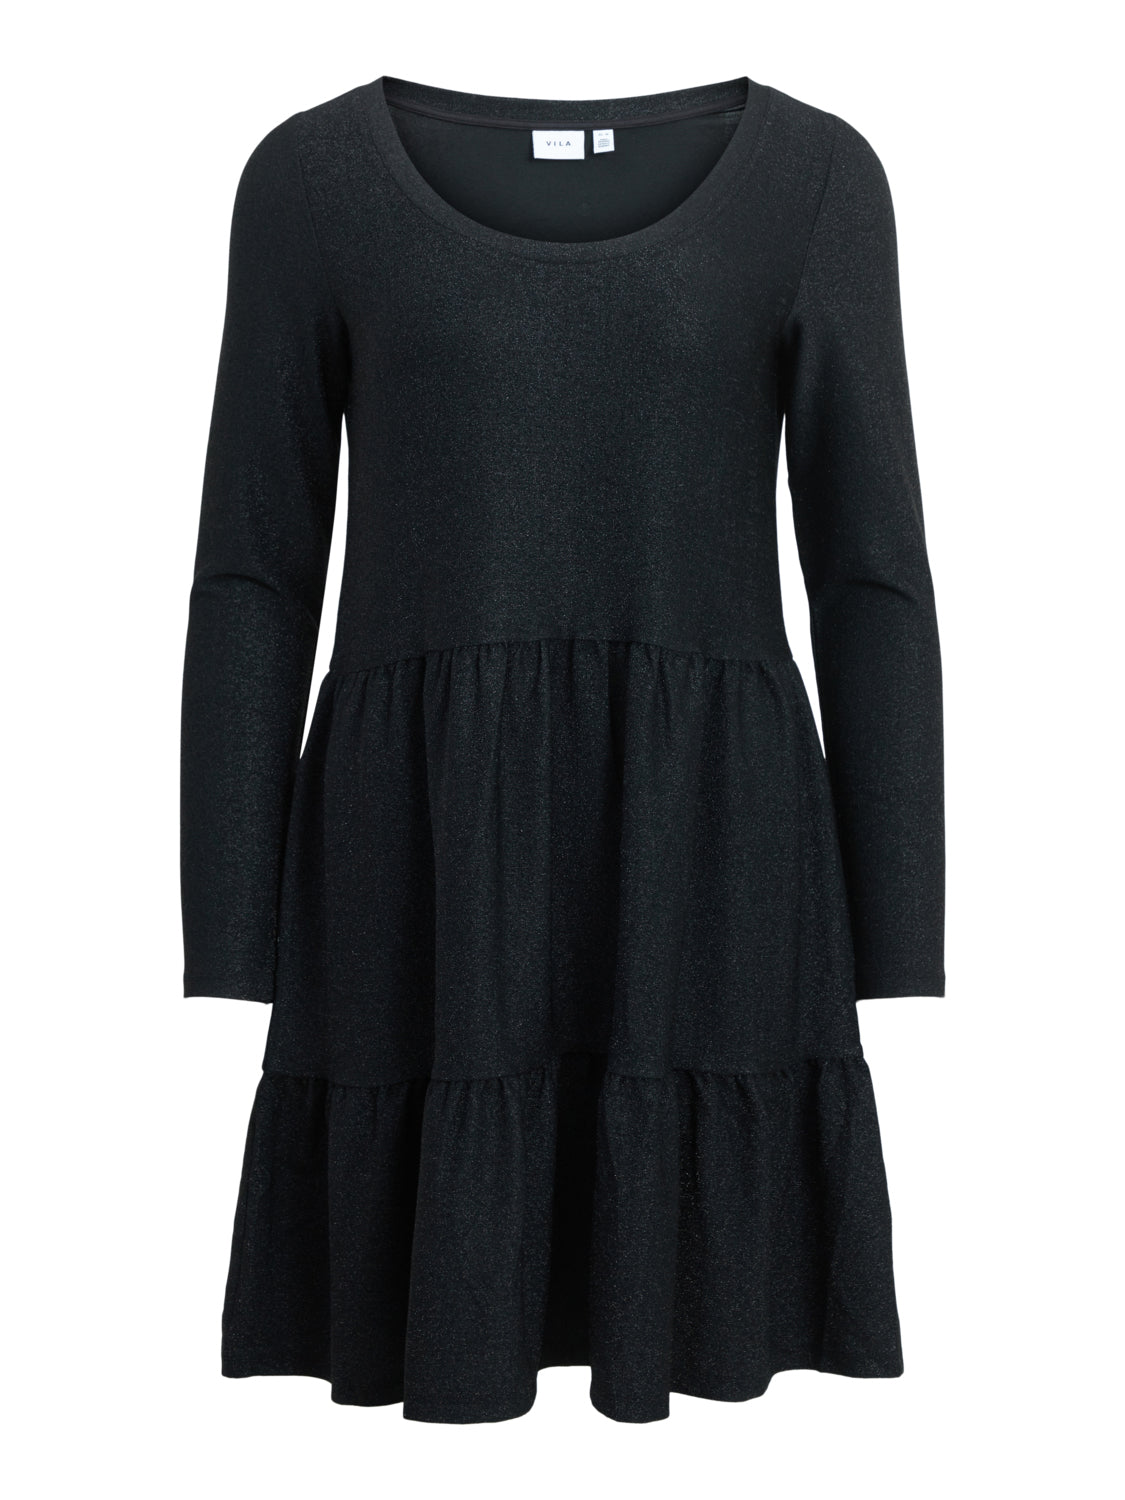 VIGLOWA Glitter Dress - Black